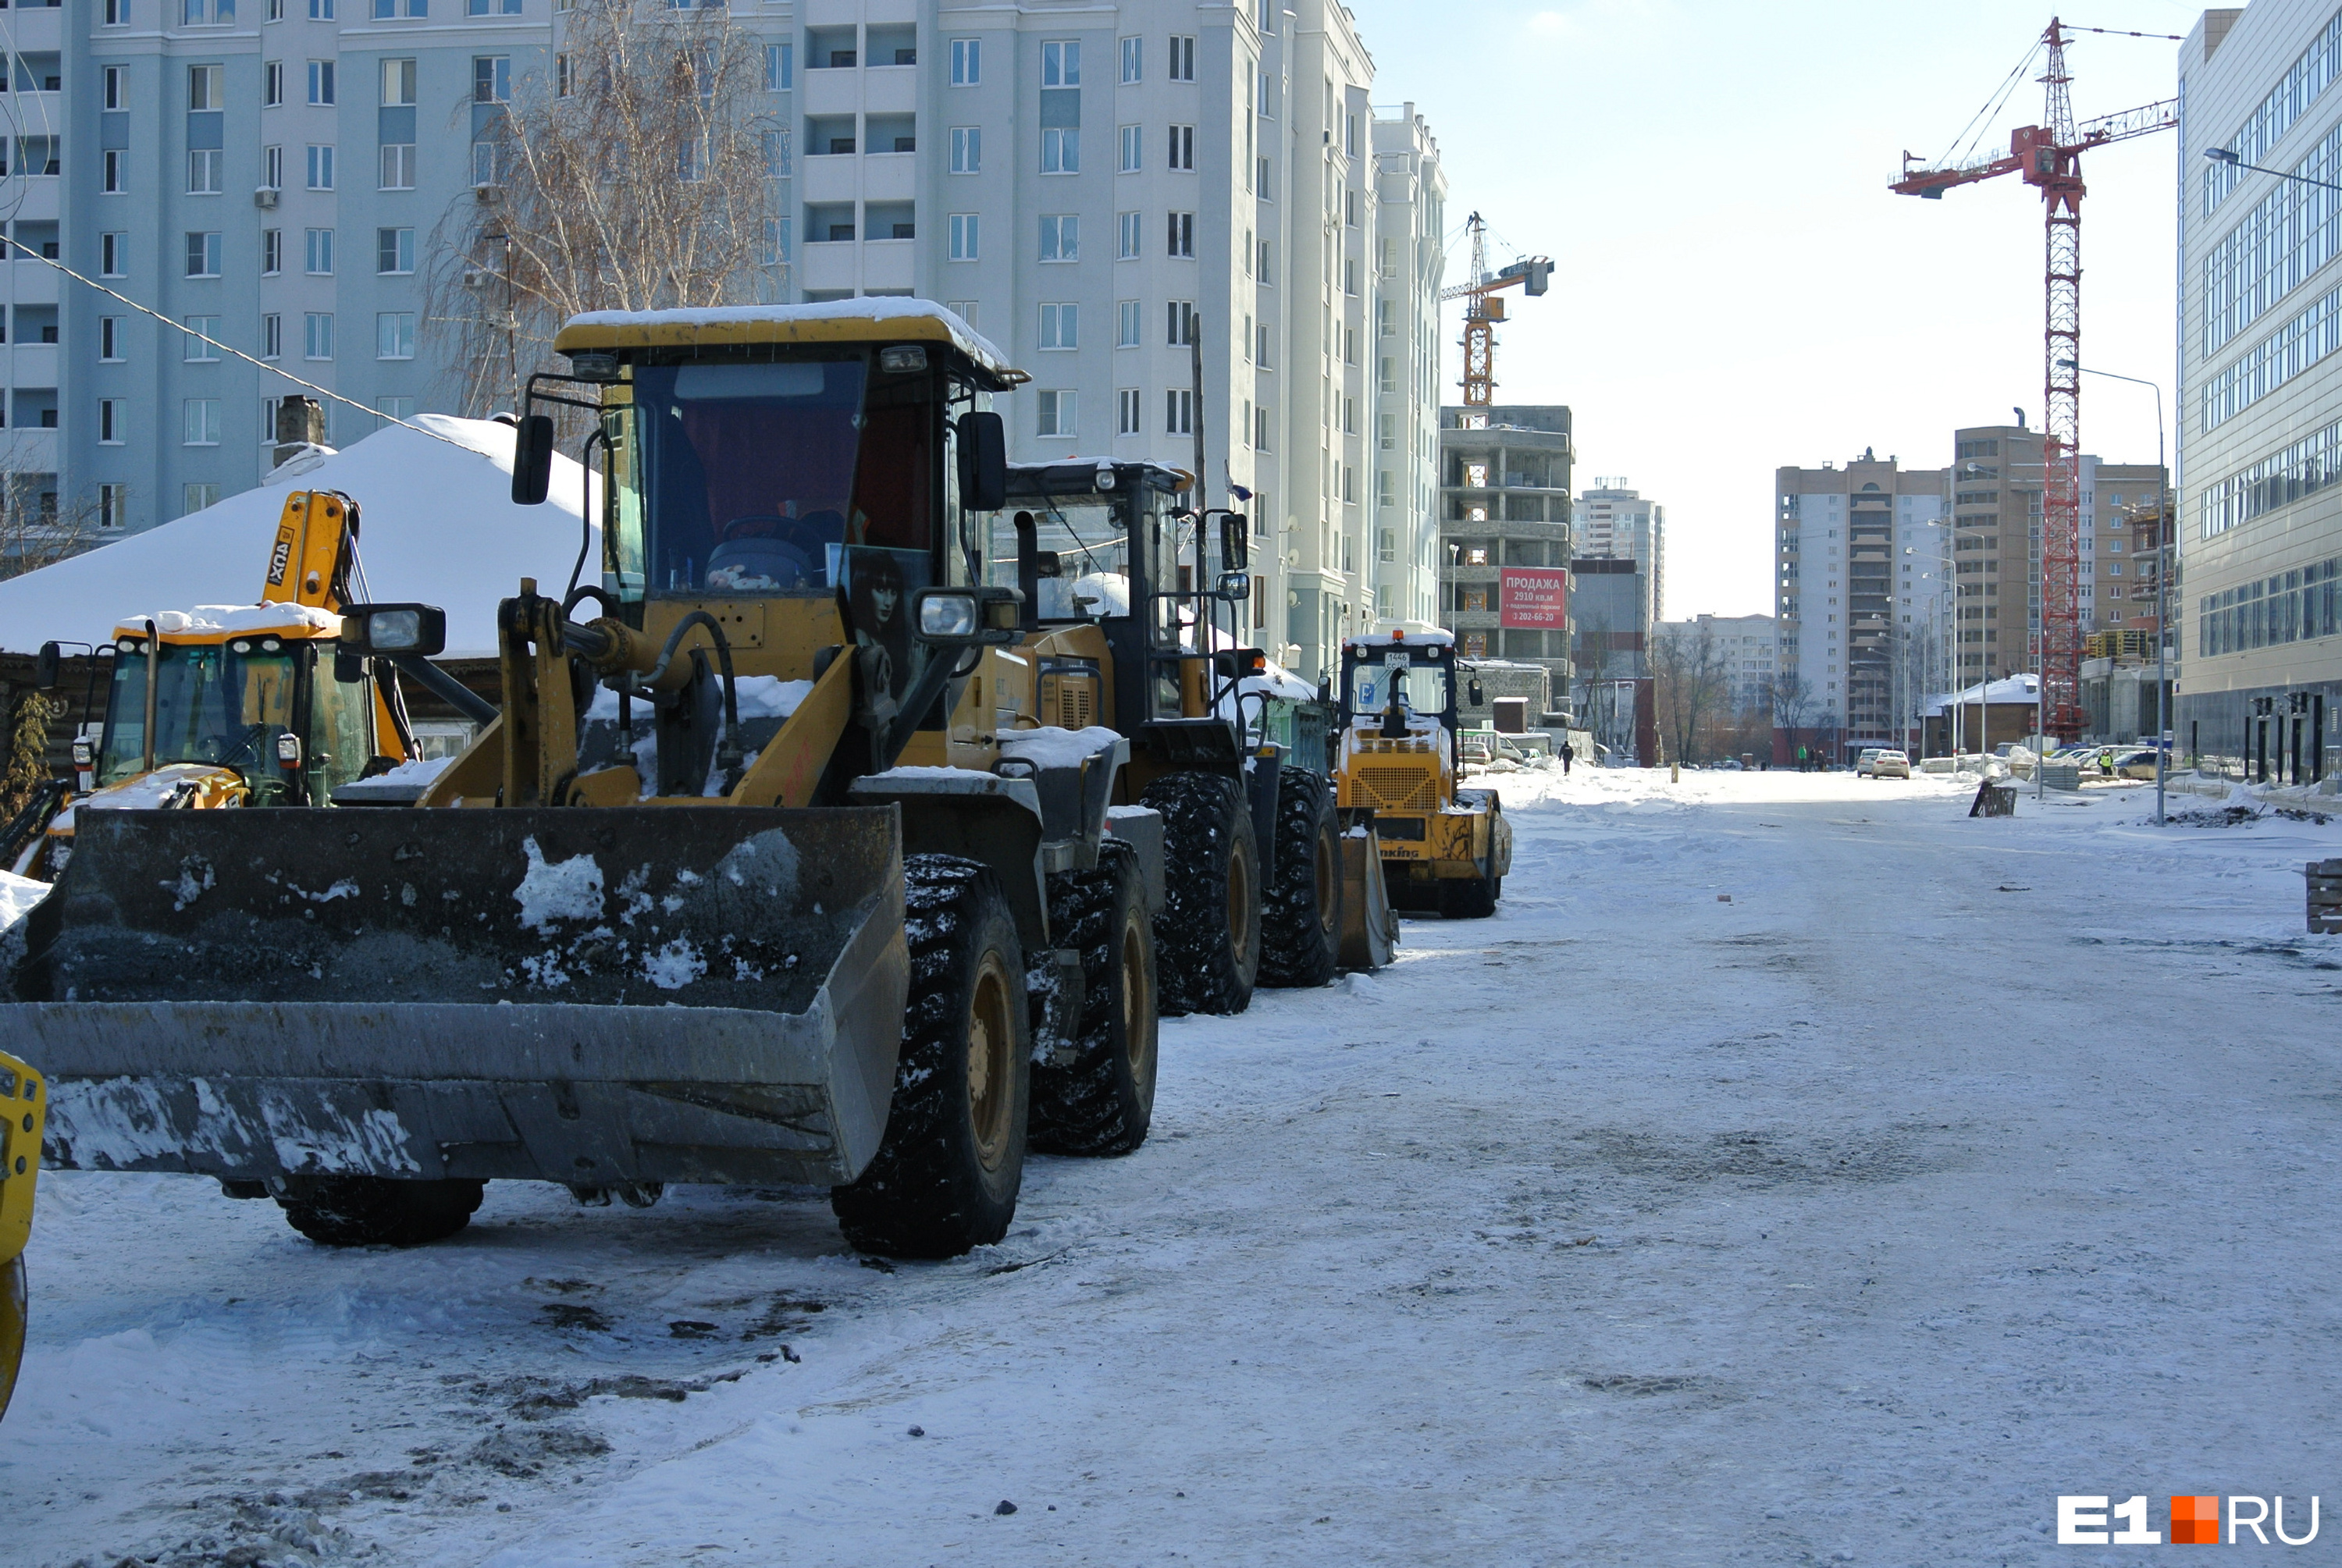 Готовьтесь к пробкам! В центре Екатеринбурга закроют улицу на два месяца